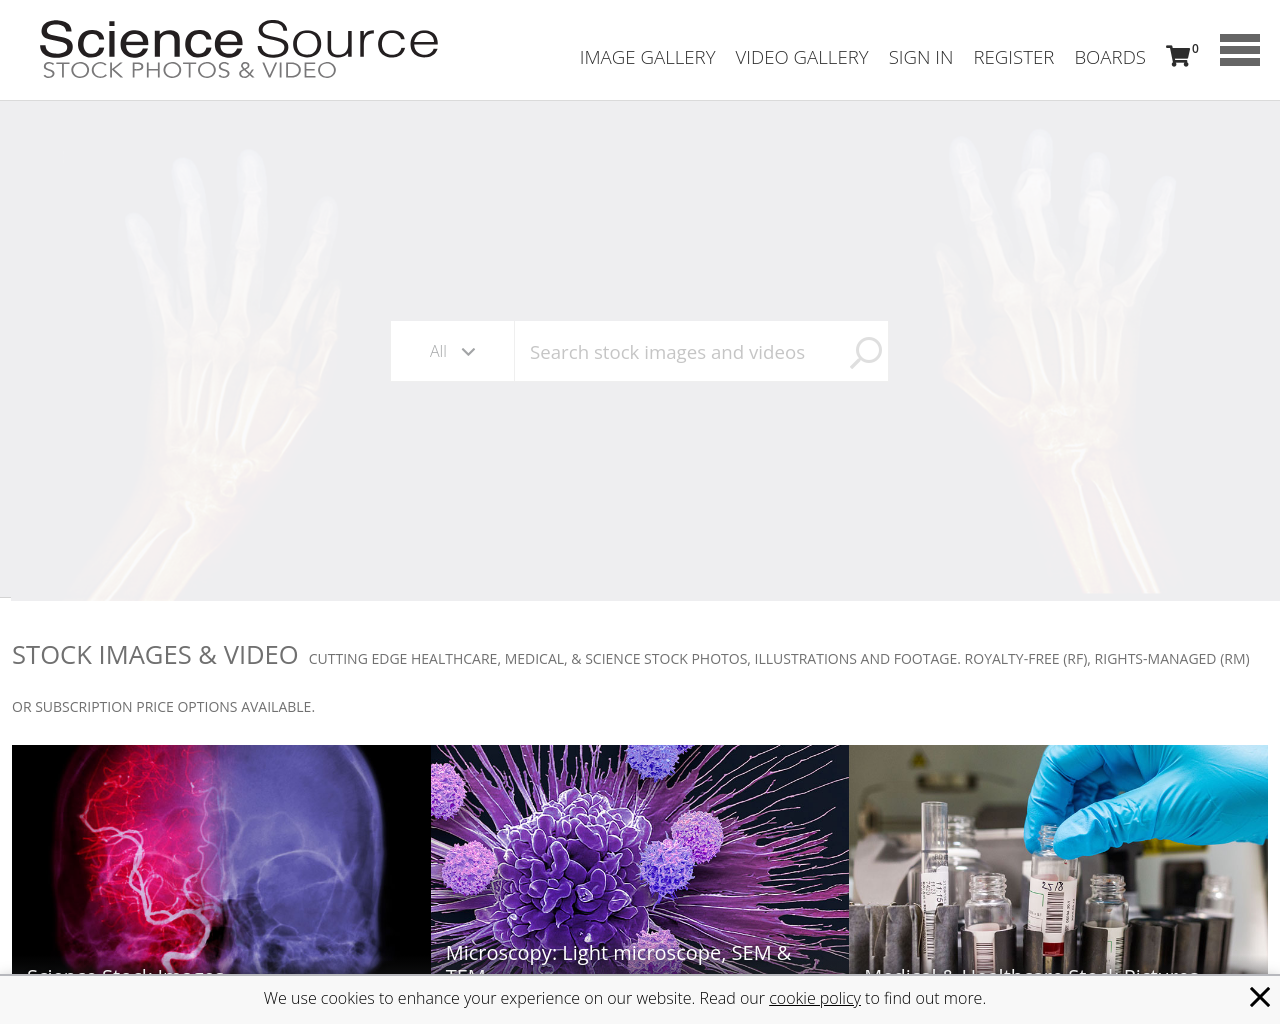 sciencesource.com